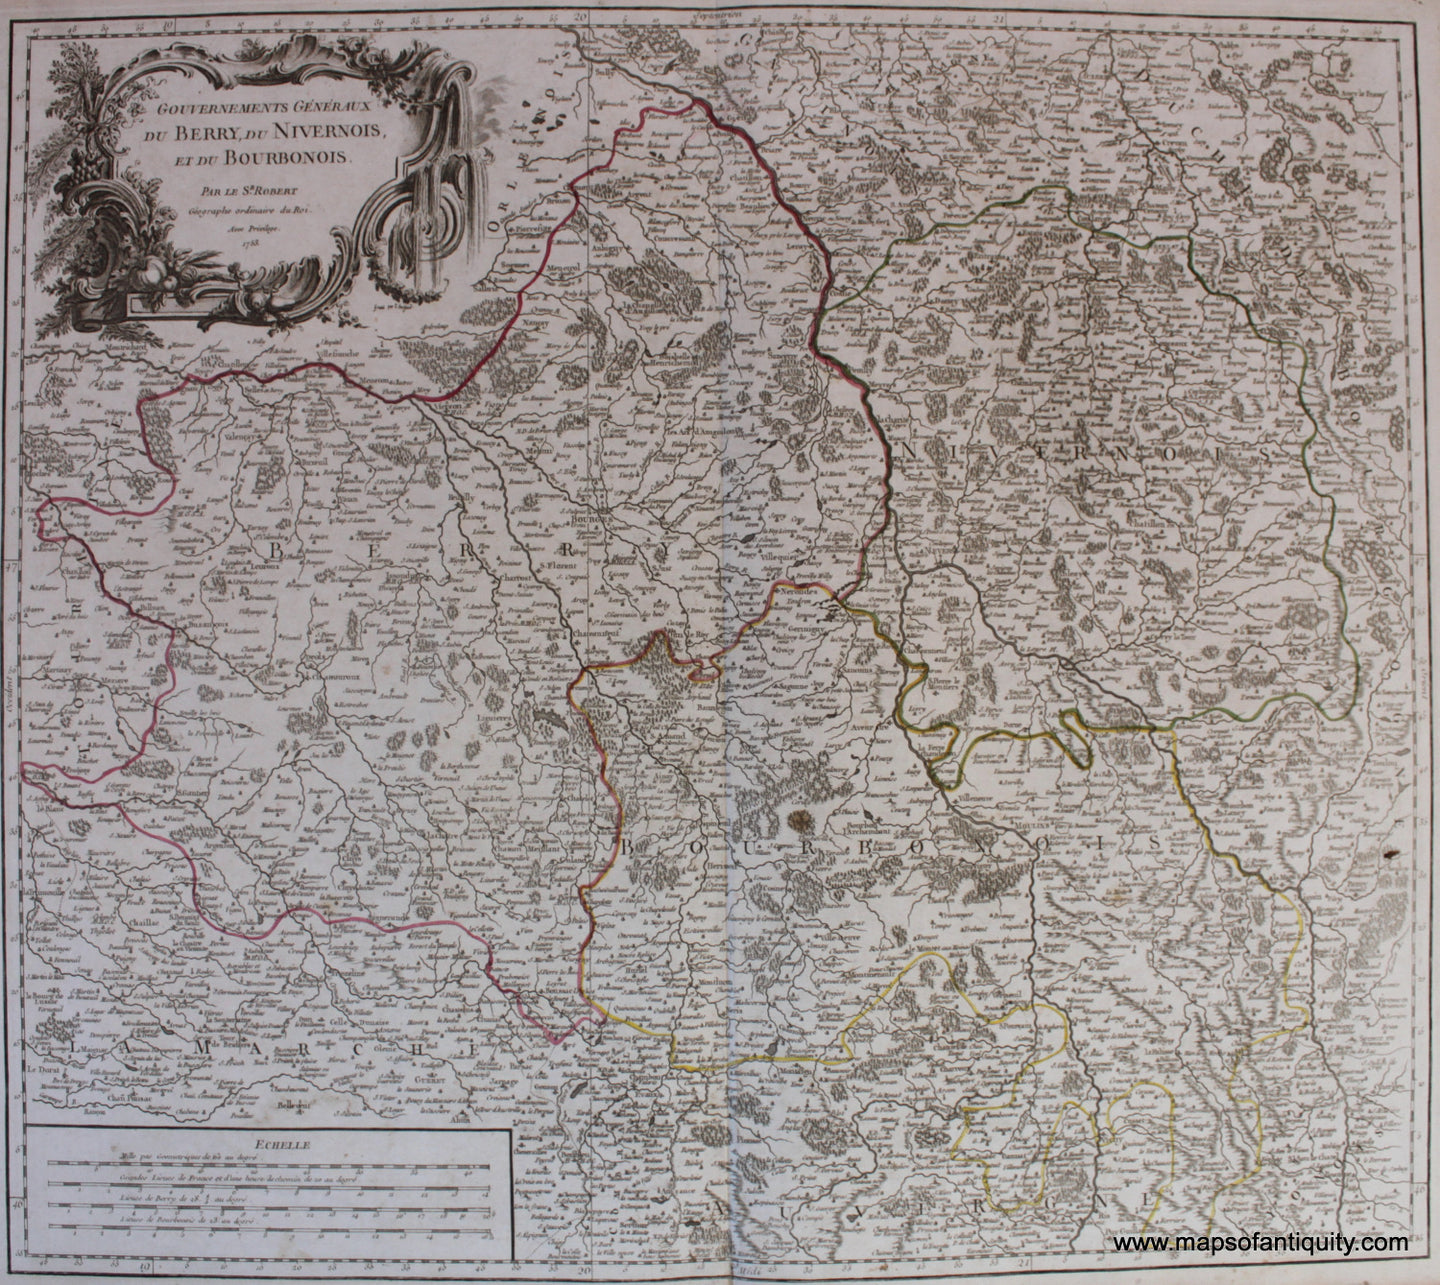 Antique-Hand-Colored-Map-Gouvernements-Generaux-Du-Berry-Du-Nivernois-et-Du-Bourbonois-Europe-France-1753-Vaugondy-Maps-Of-Antiquity